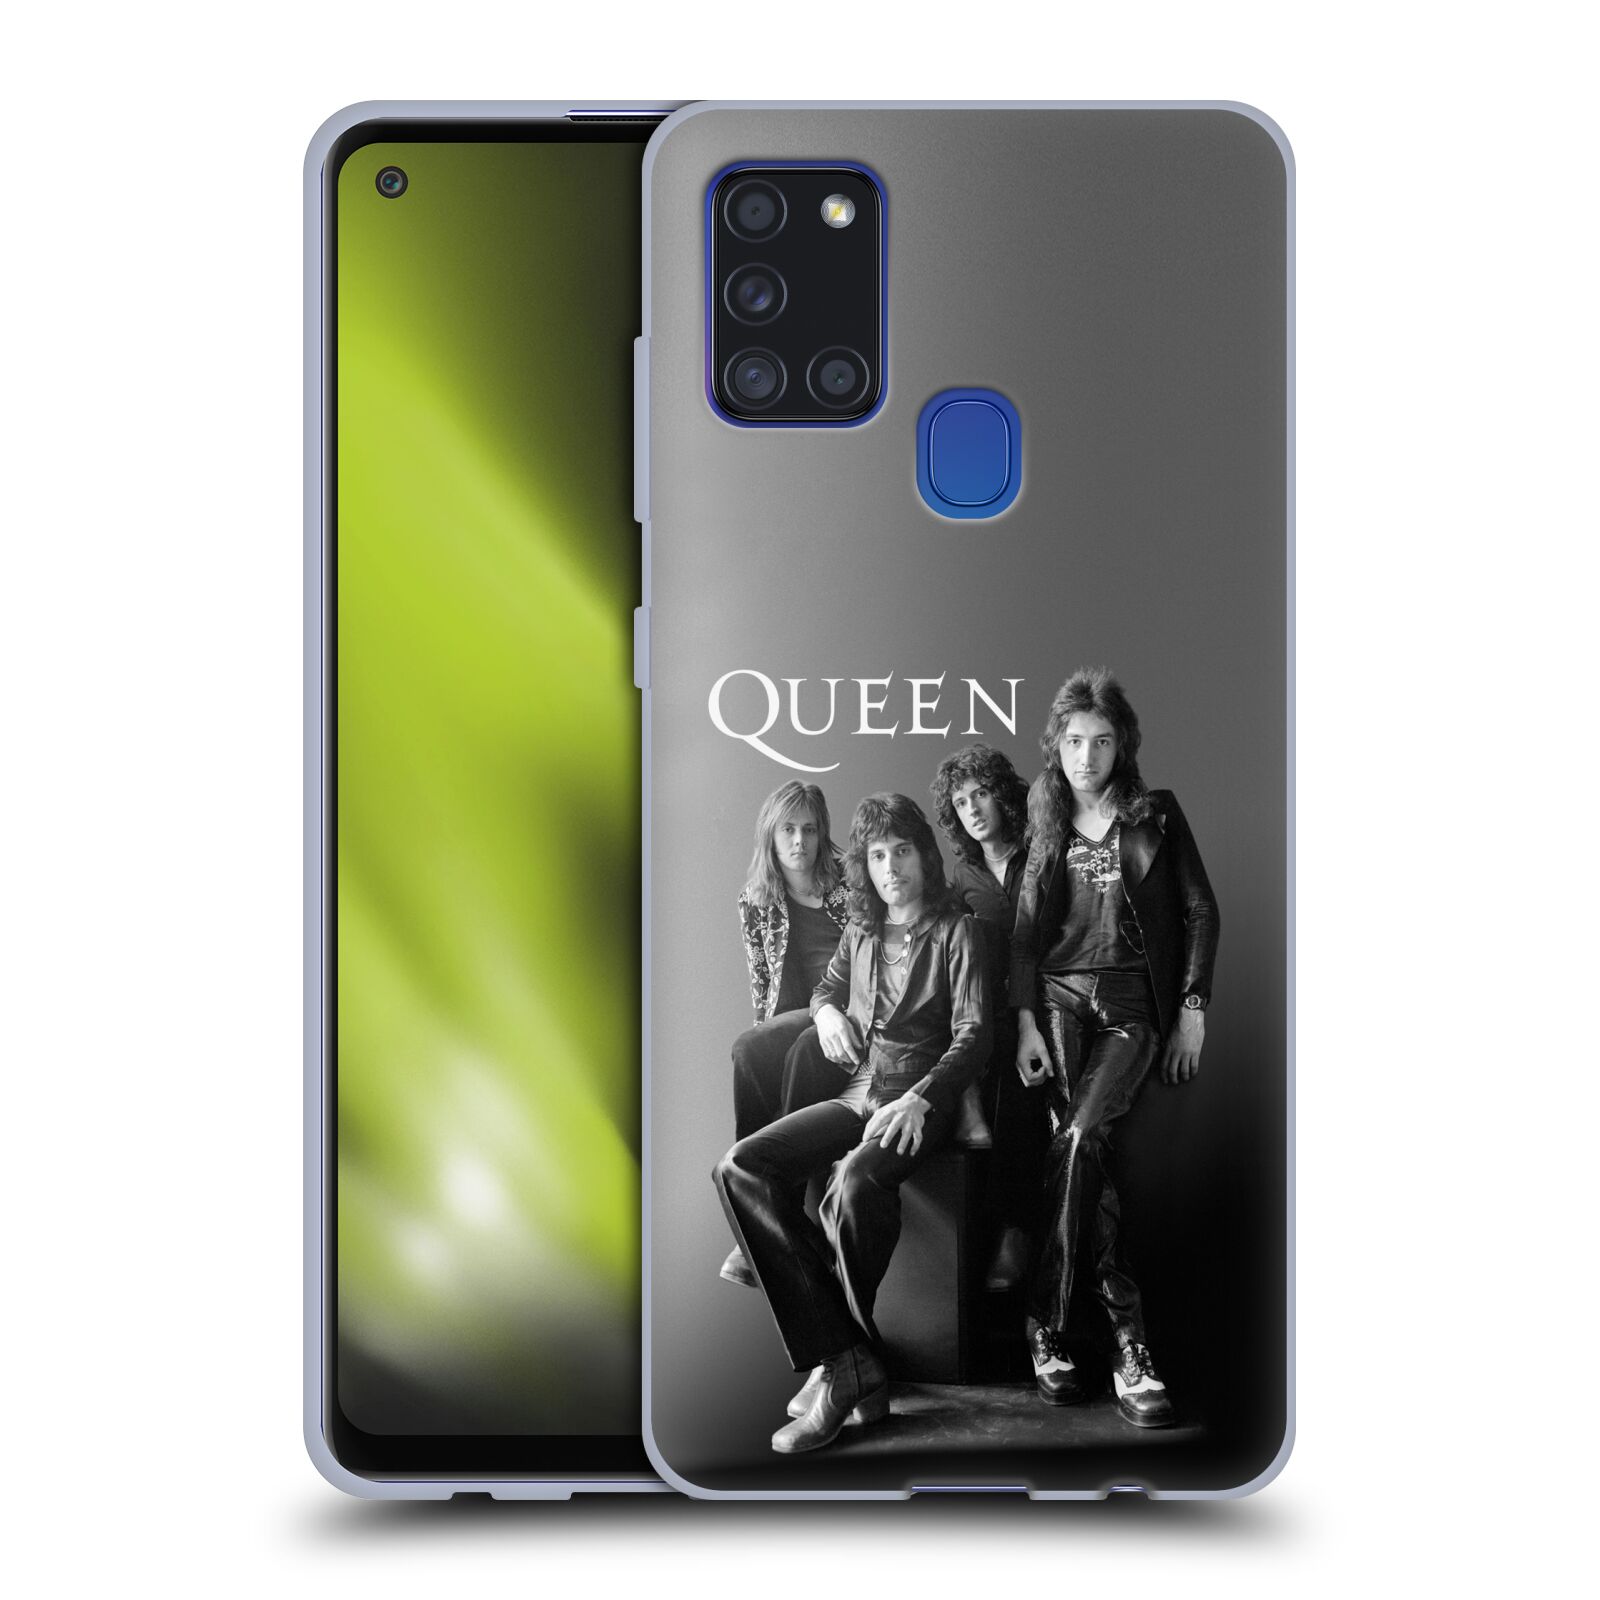 Silikonové pouzdro na mobil Samsung Galaxy A21s - Head Case - Queen - Skupina (Silikonový kryt, obal, pouzdro na mobilní telefon Samsung Galaxy A21s SM-A217F s motivem Queen - Skupina)